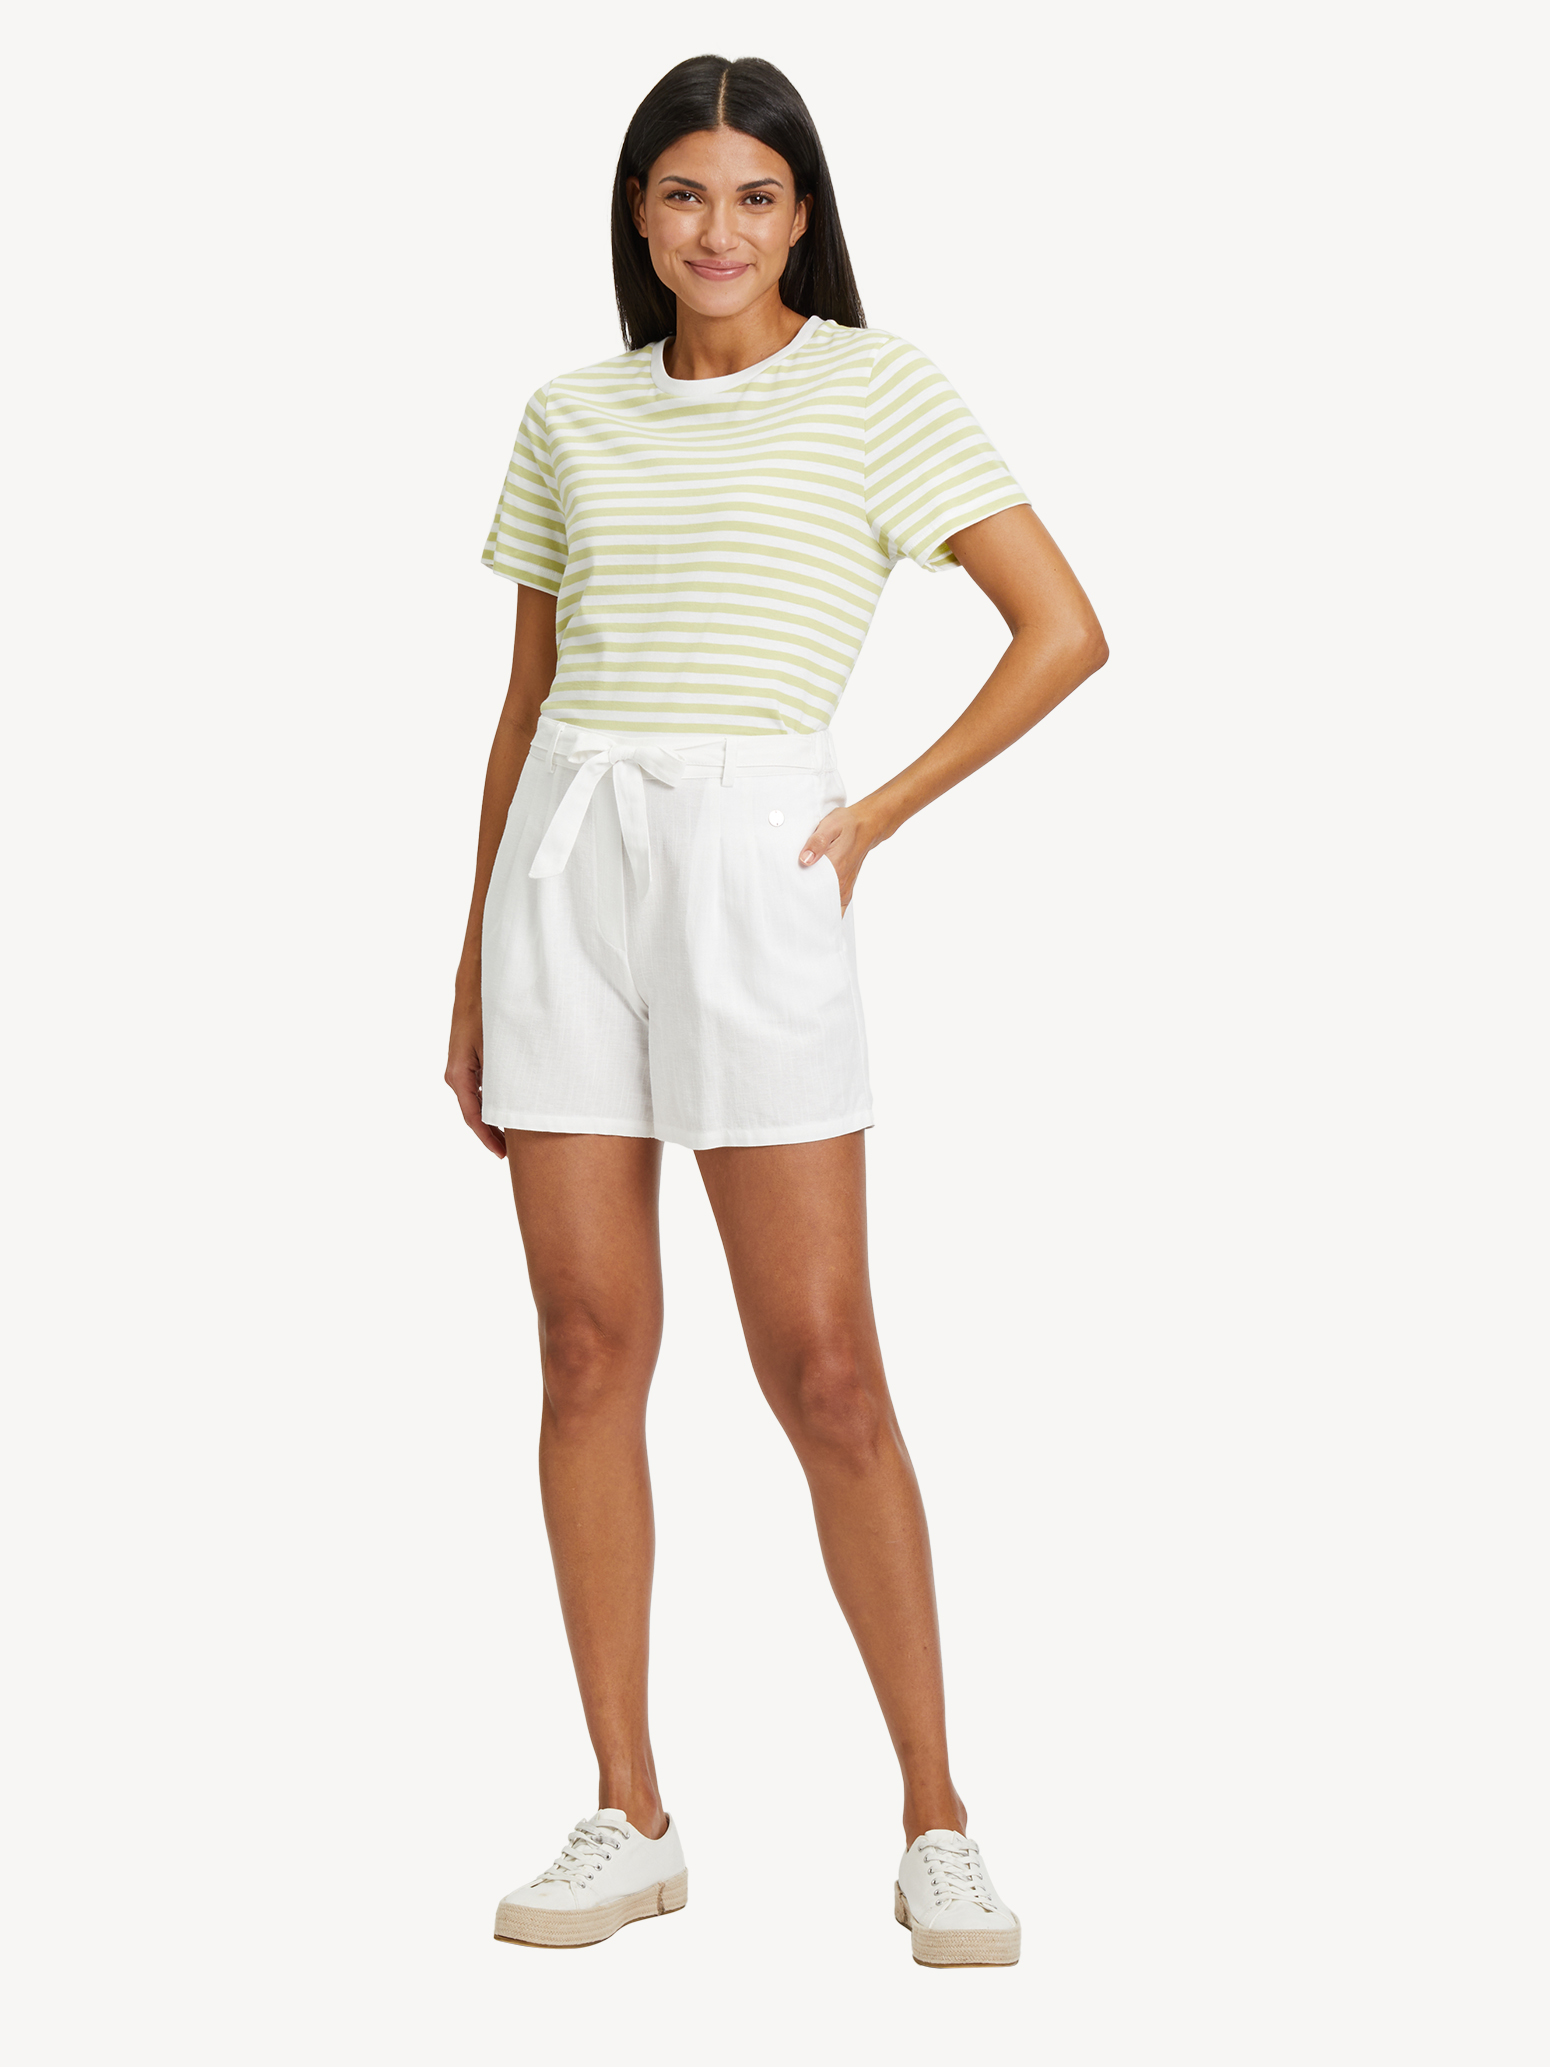 Shorts, Bright White, hi-res